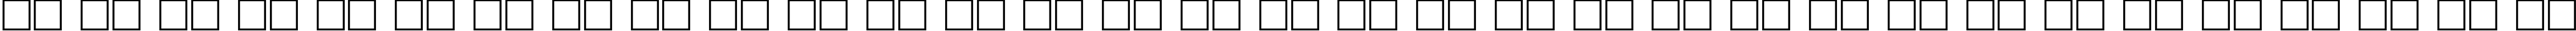 Пример написания русского алфавита шрифтом EverestUltra